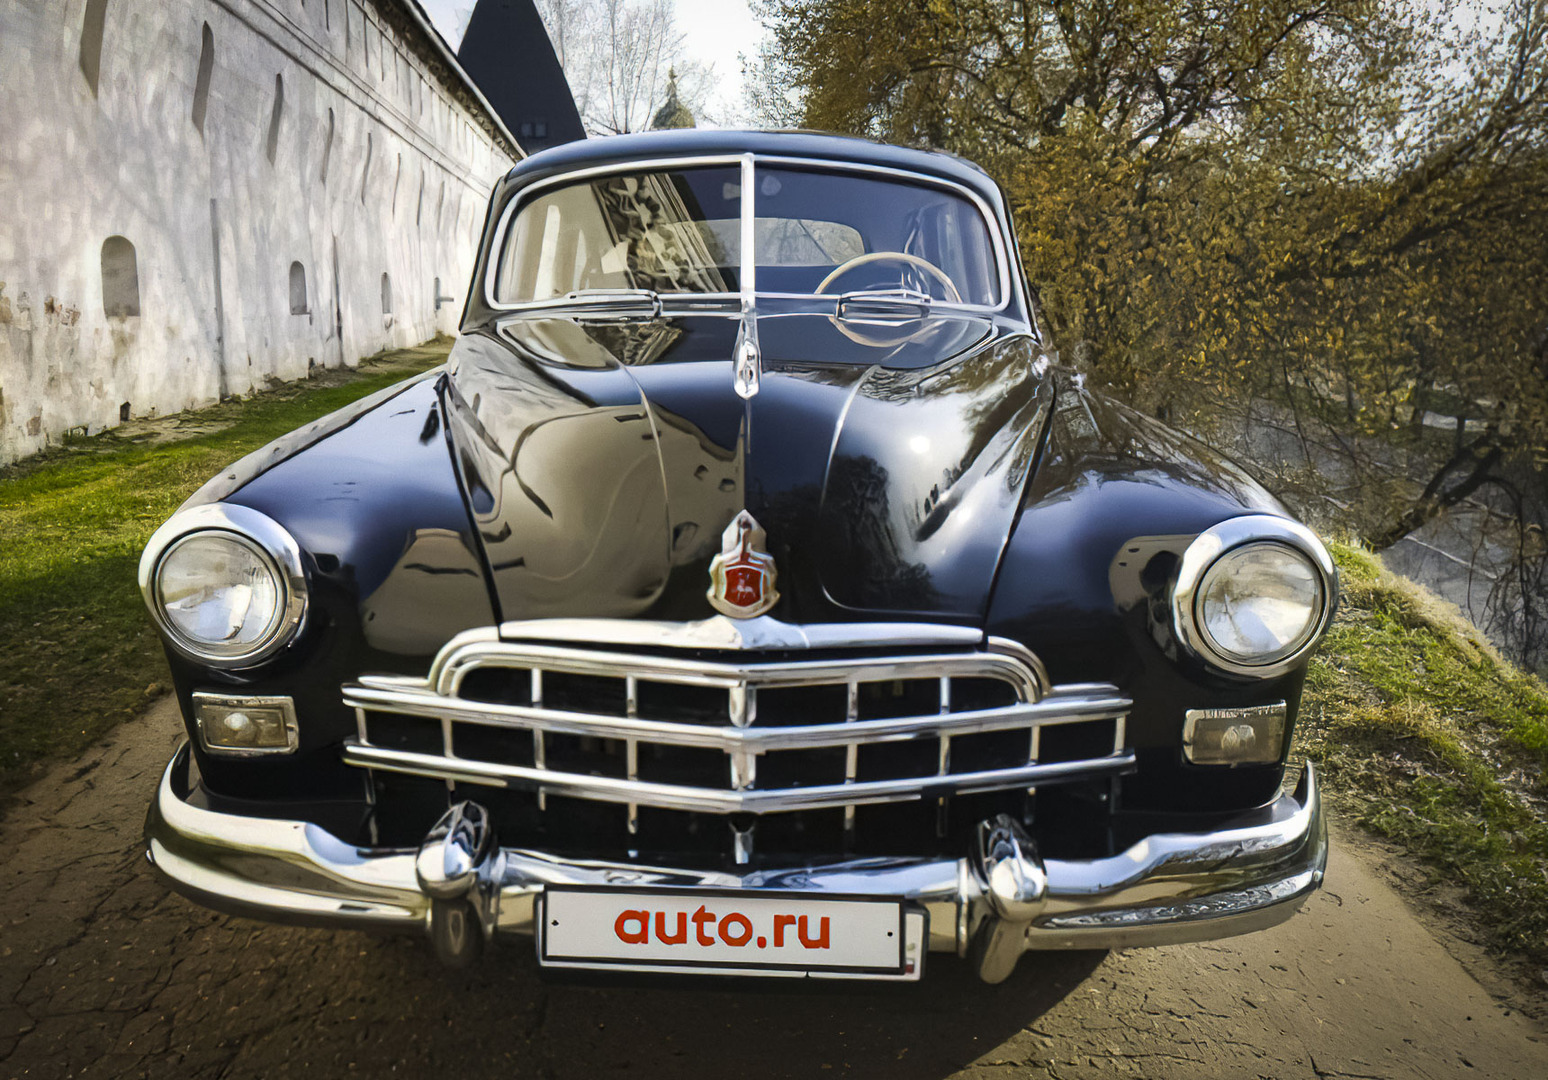 Самые дорогие советские машины, которые можно купить прямо сейчас